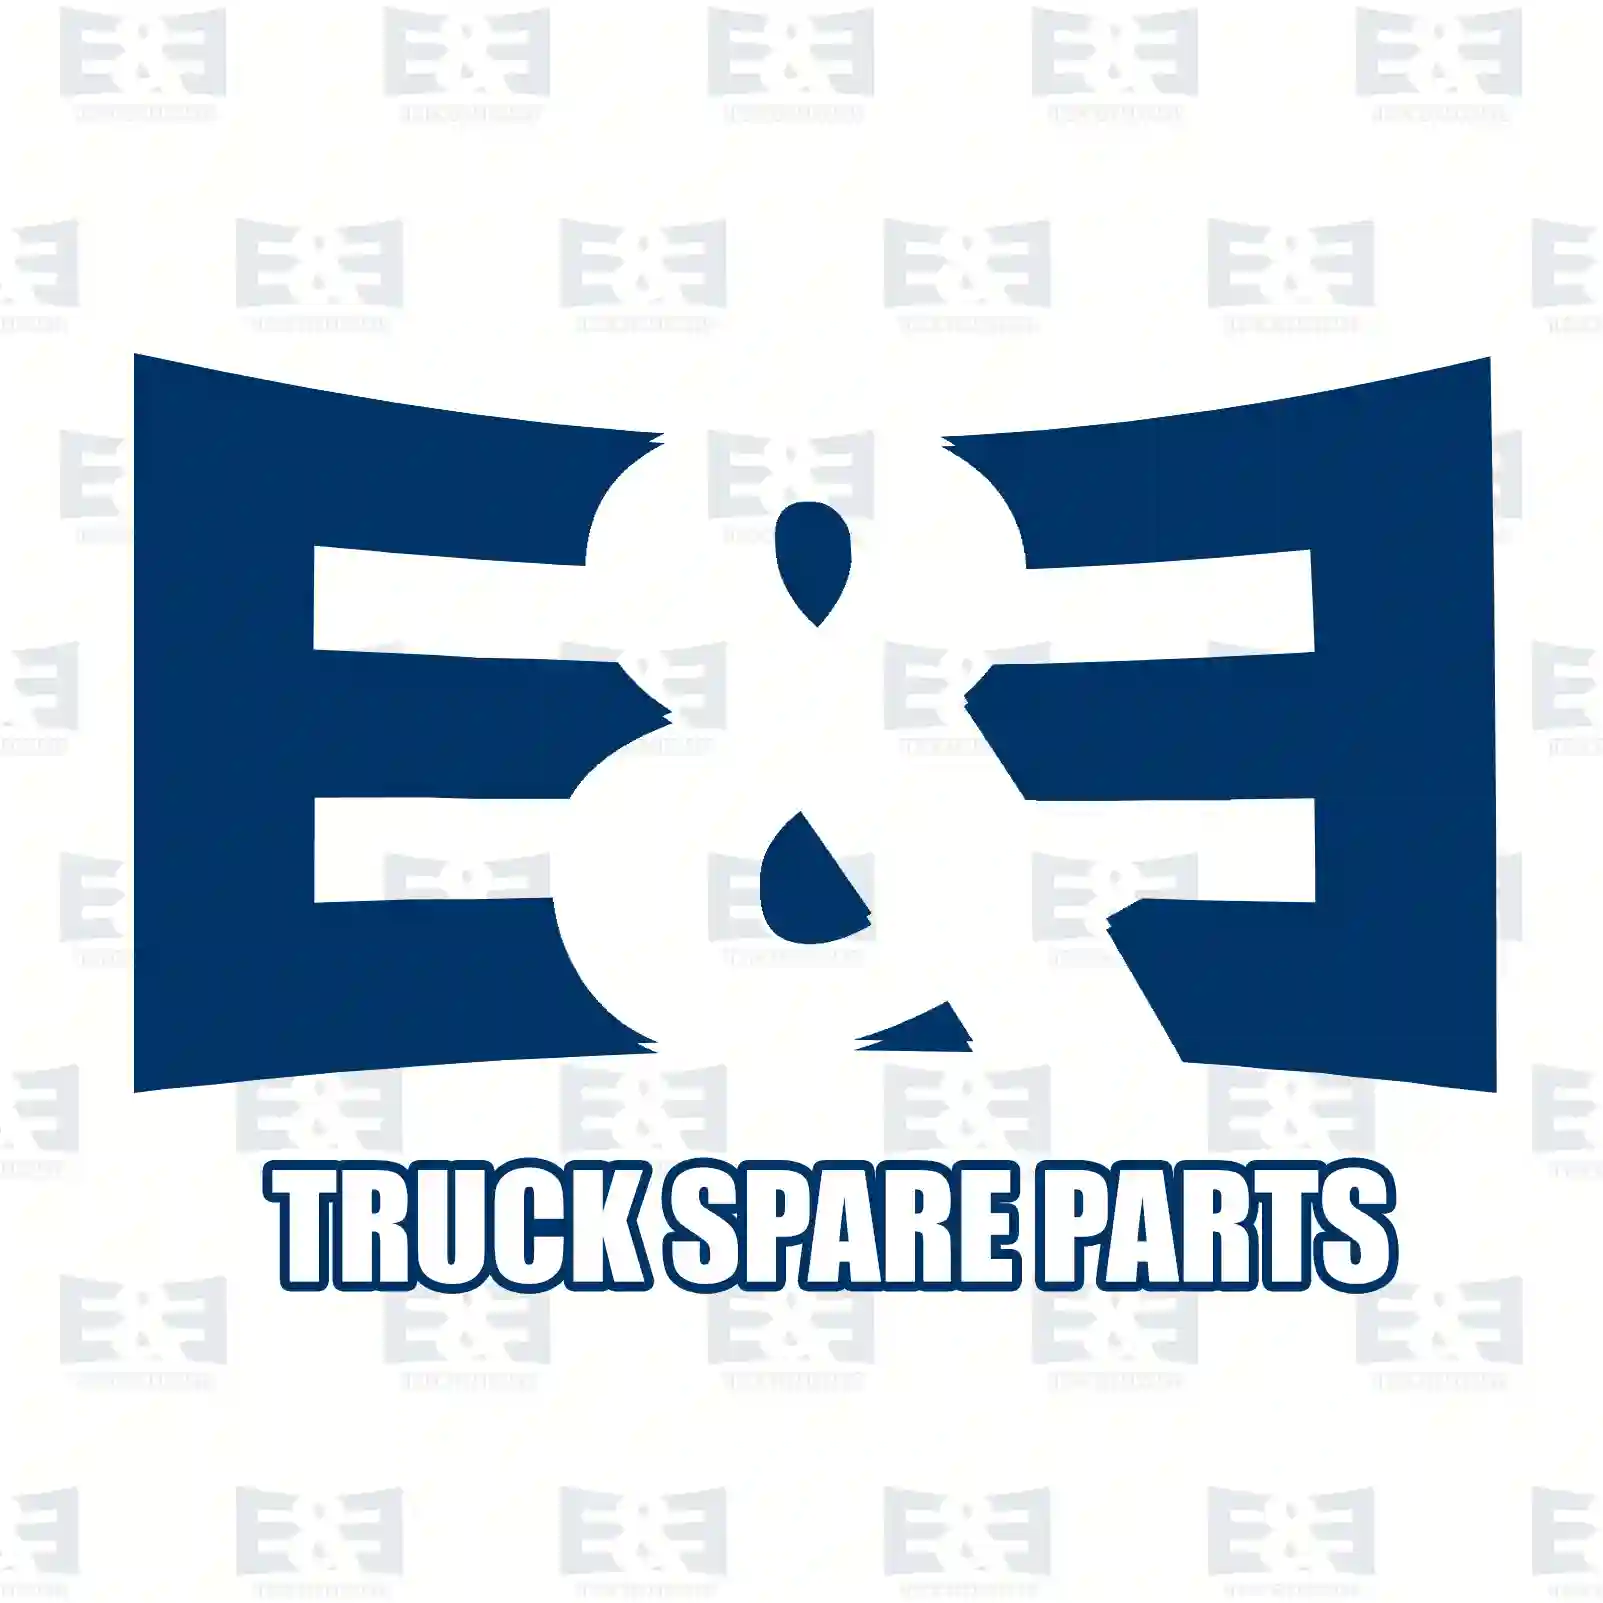 Control Arm Control arm, left, EE No 2E2279983 ,  oem no:352096, 3520L1, 3520N4, 1308759080, 1317238080, 1317239080, 1320755080, 1320756080, 1331937080, 1339464080, 352096, 3520L1, 3520N4 E&E Truck Spare Parts | Truck Spare Parts, Auotomotive Spare Parts